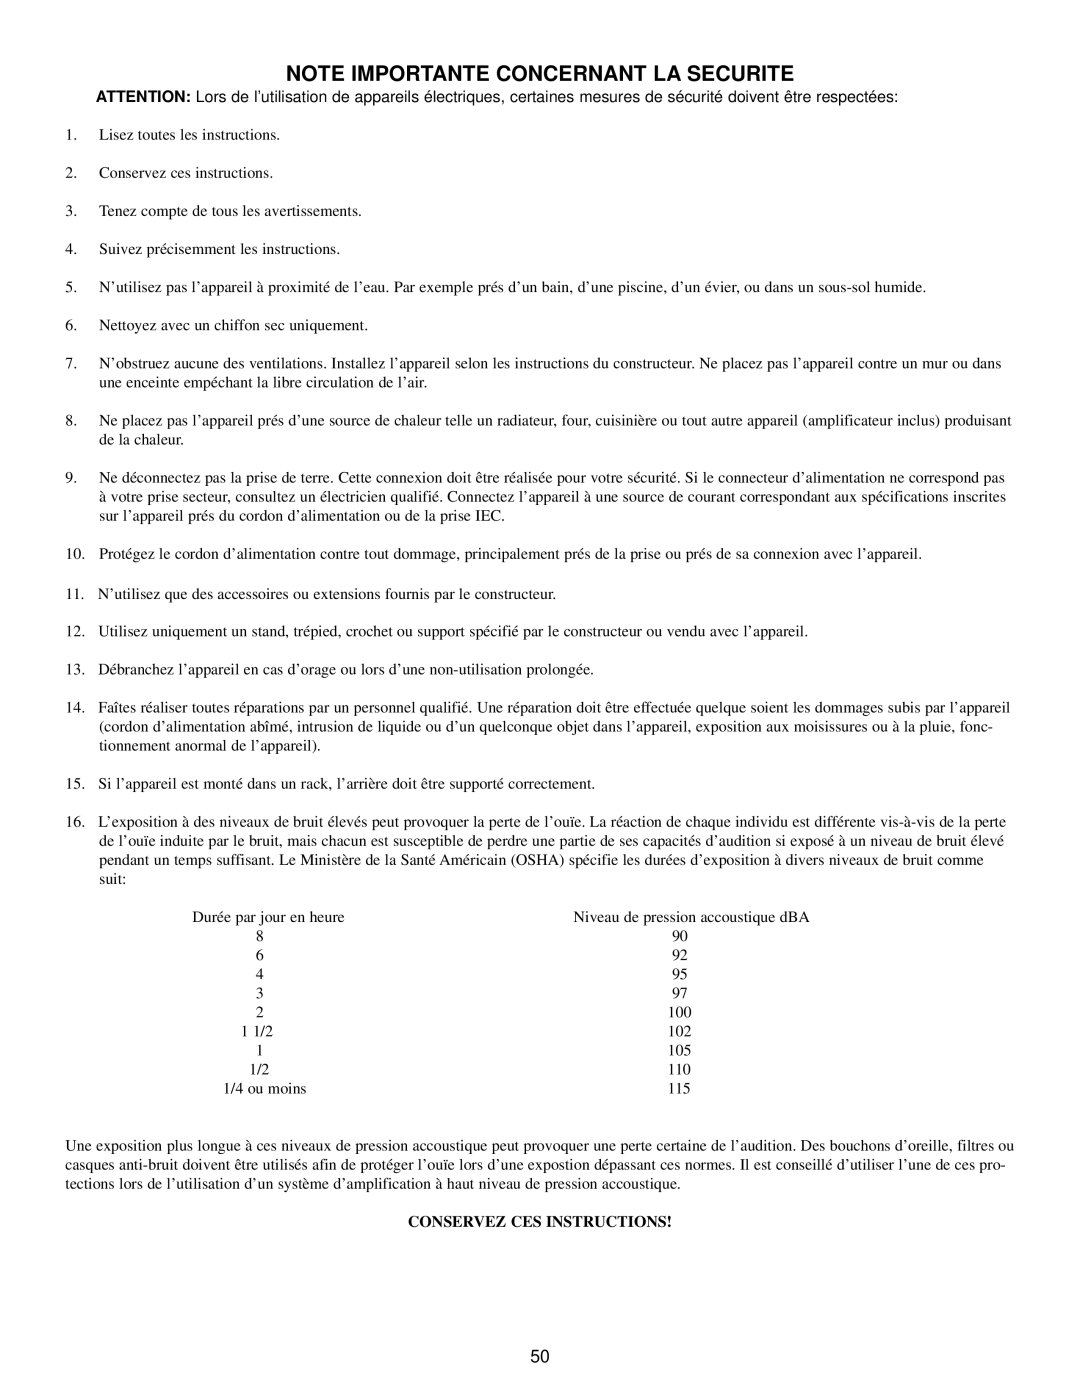 Peavey 100 manual Note Importante Concernant La Securite, Conservez Ces Instructions 